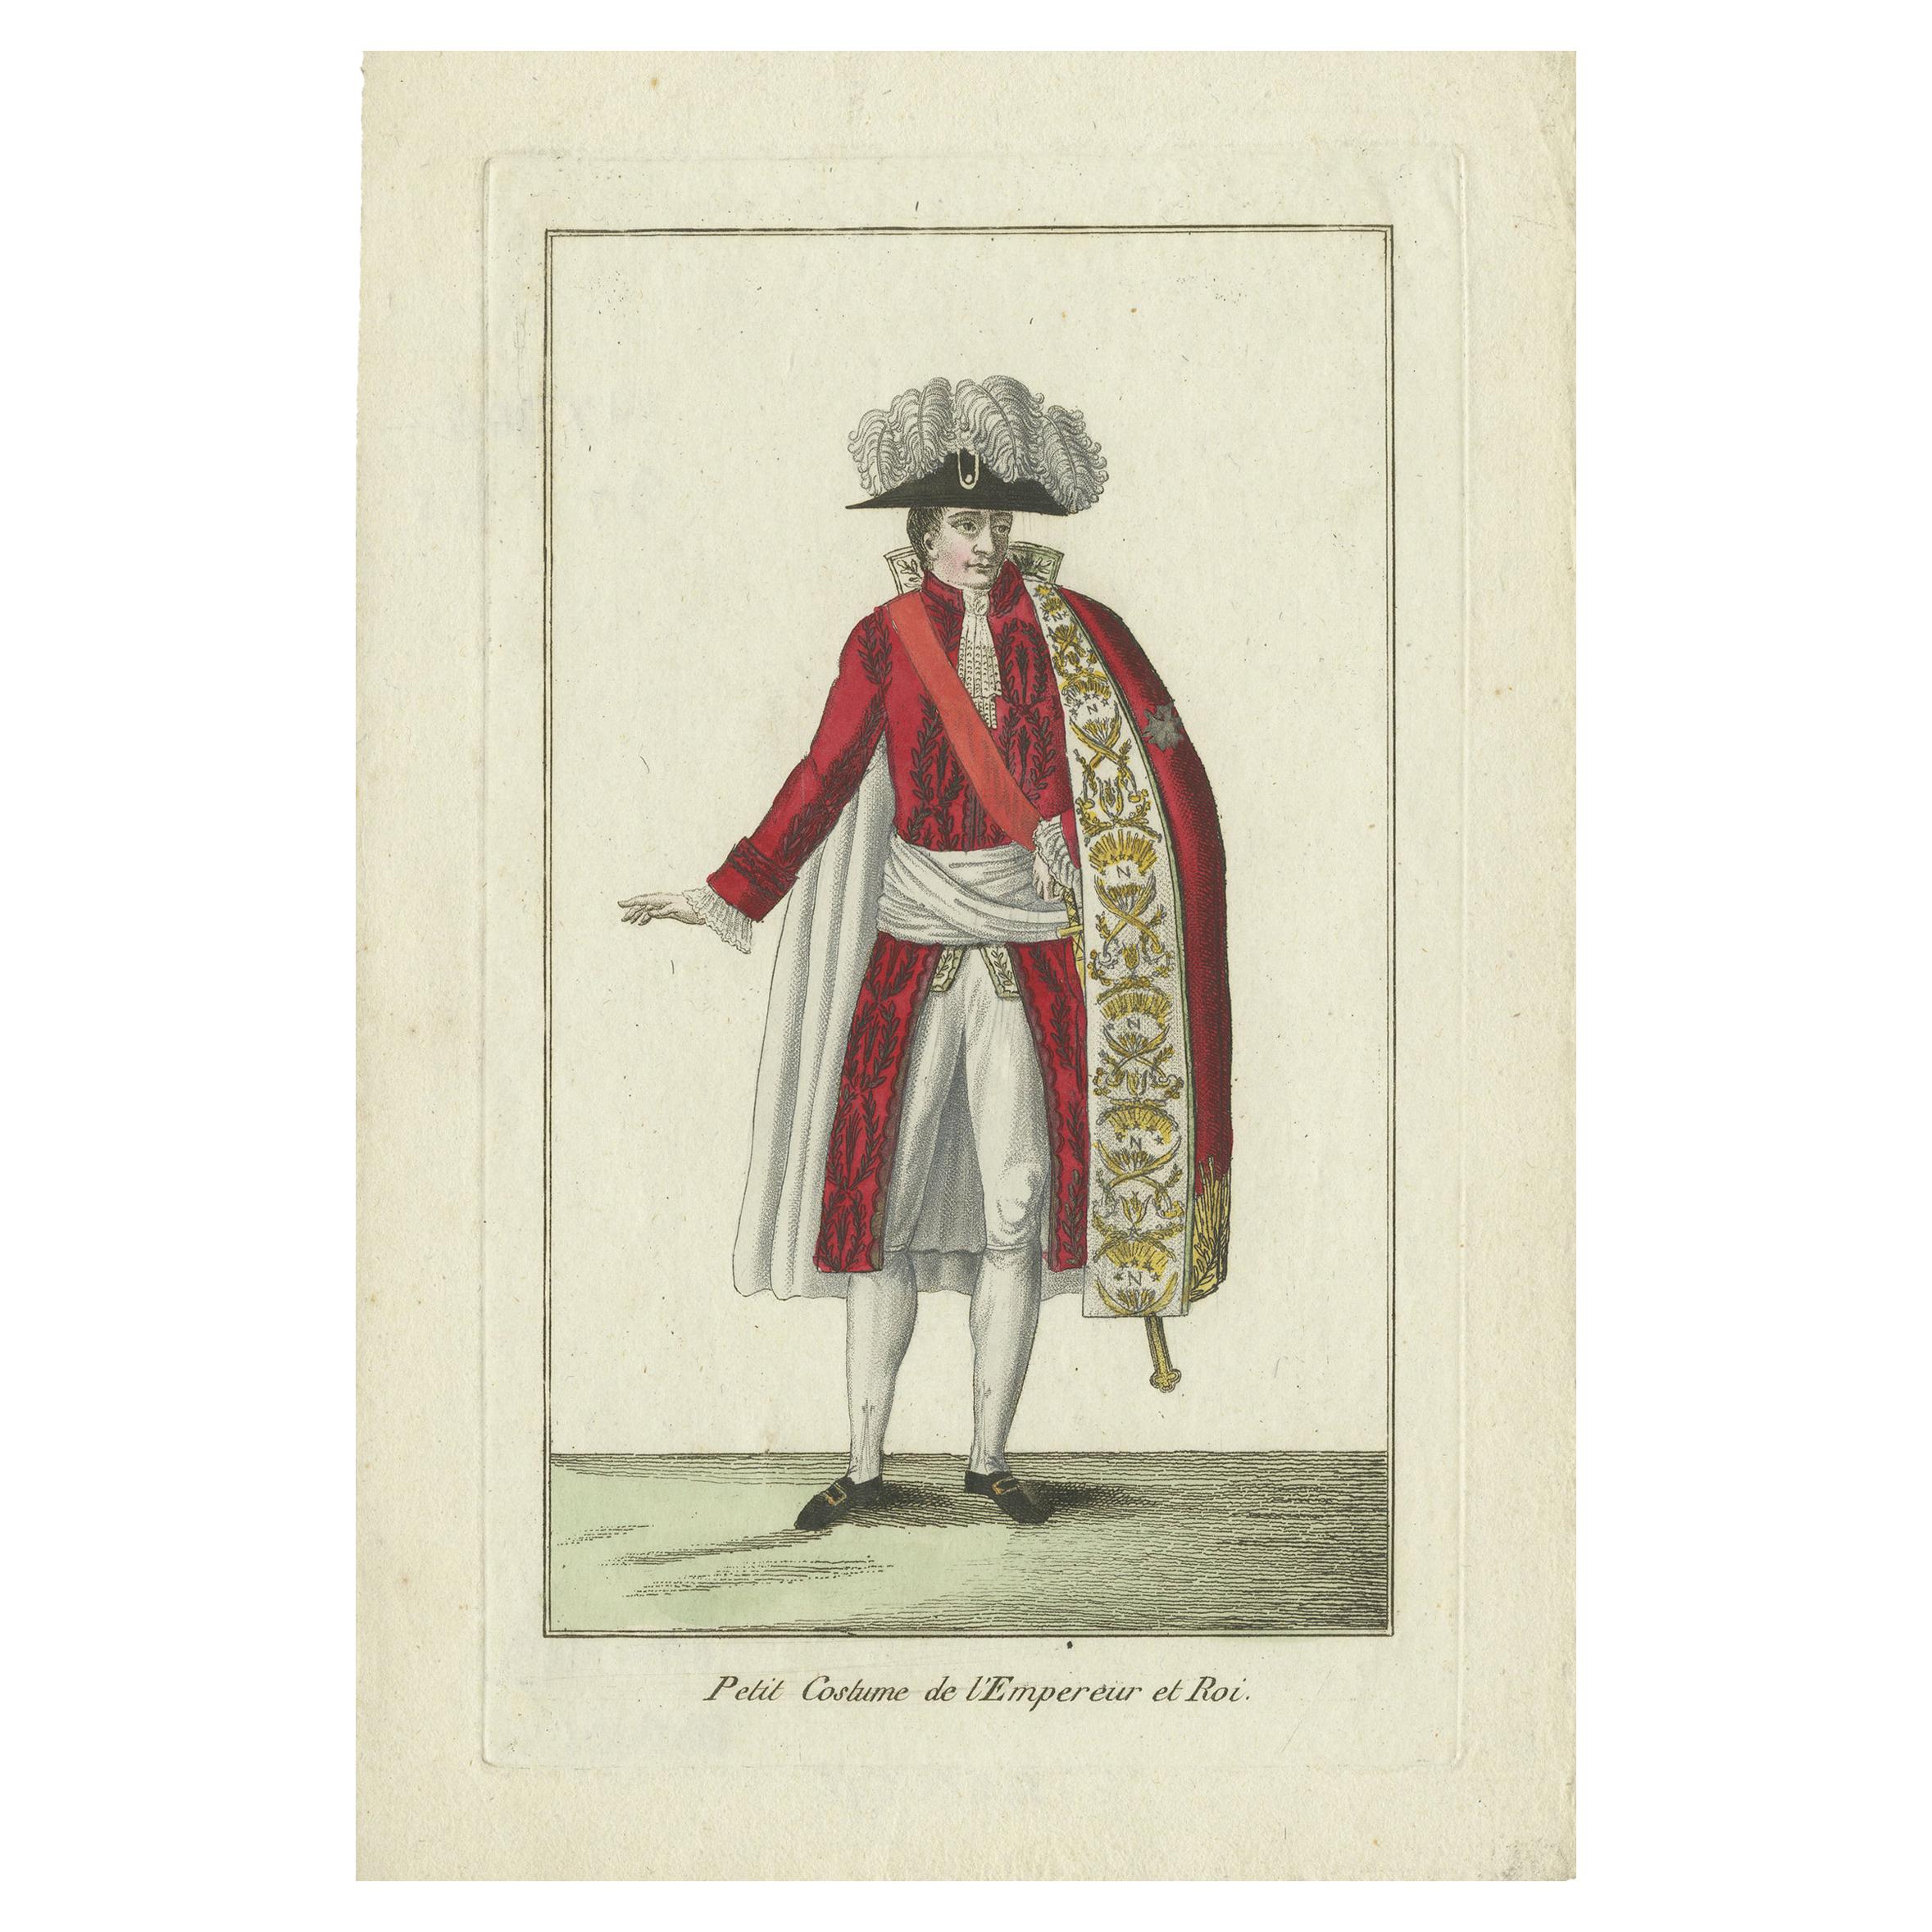 Ancienne estampe de costume de l'empereur et du roi de France, vers 1810